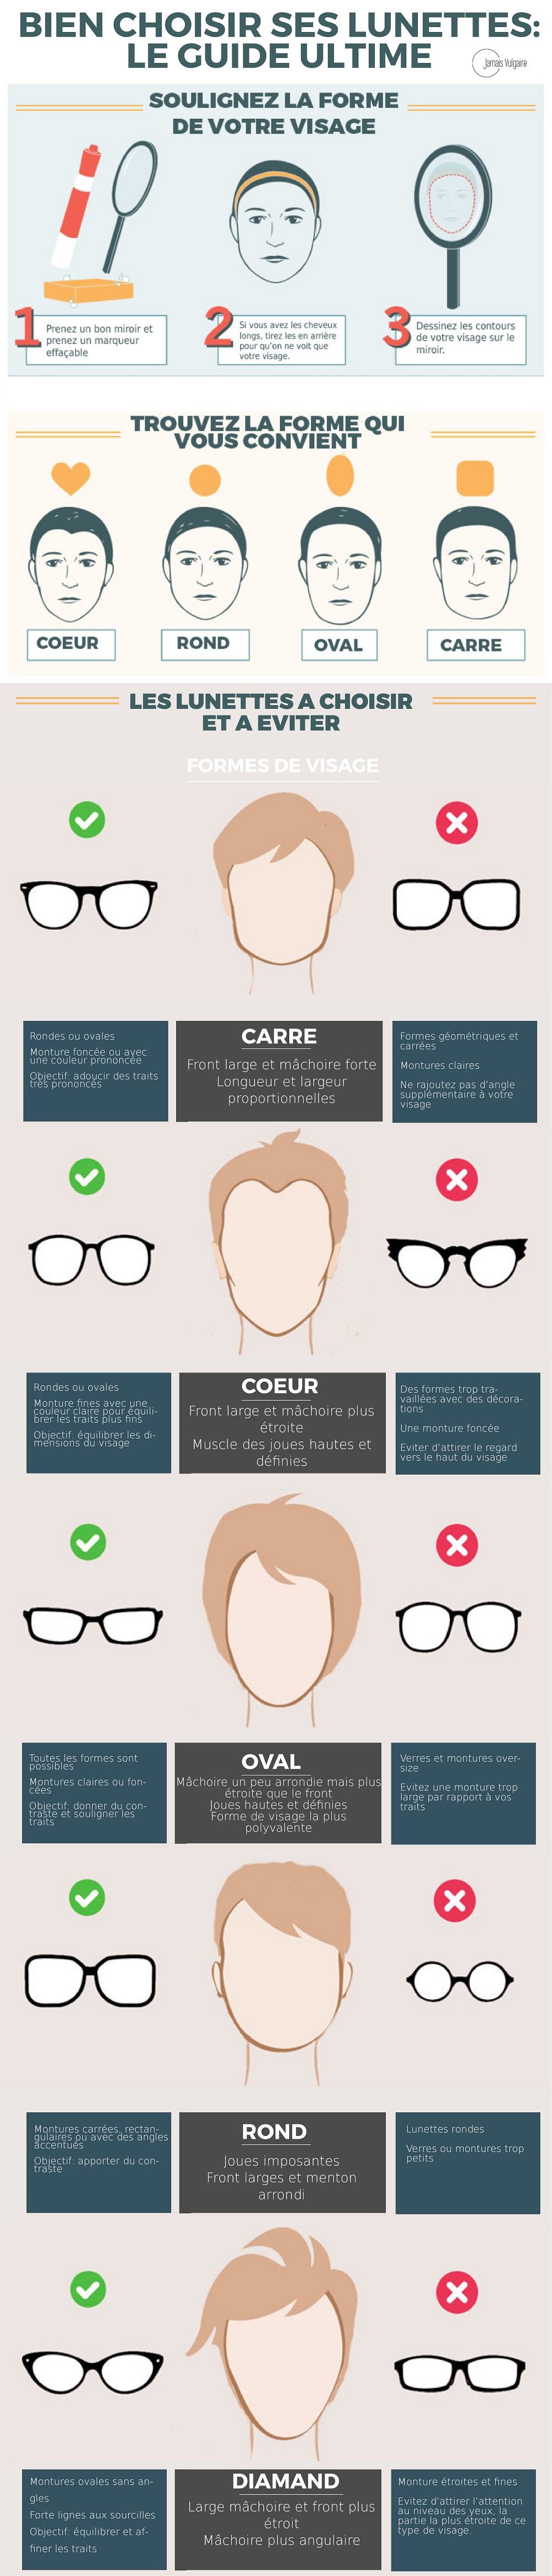 Bien choisir ses lunettes de soleil : les erreurs à éviter